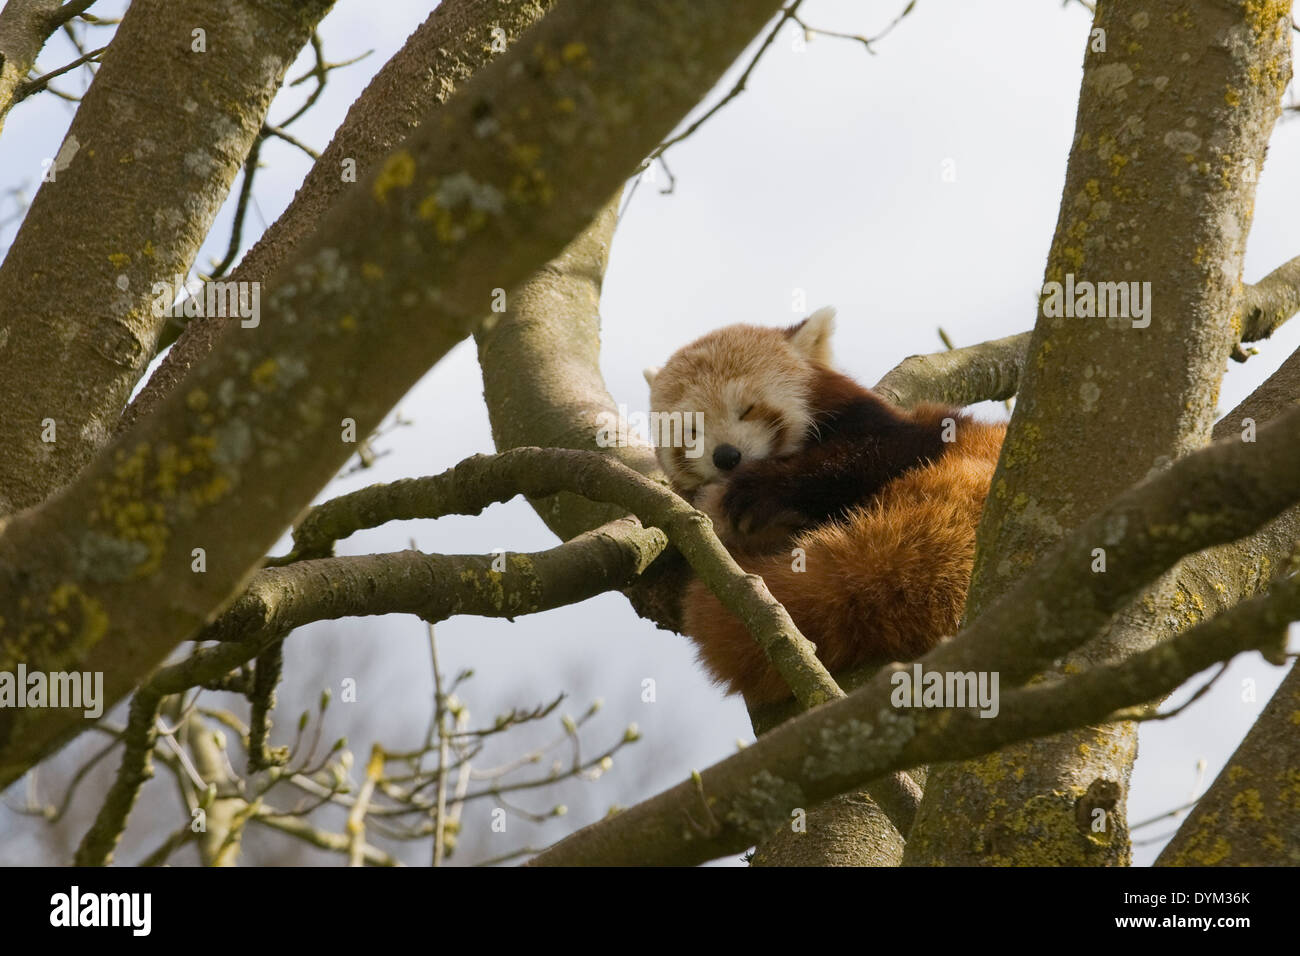 Un panda rouge en captivité dans un arbre Ailurus fulgens Banque D'Images